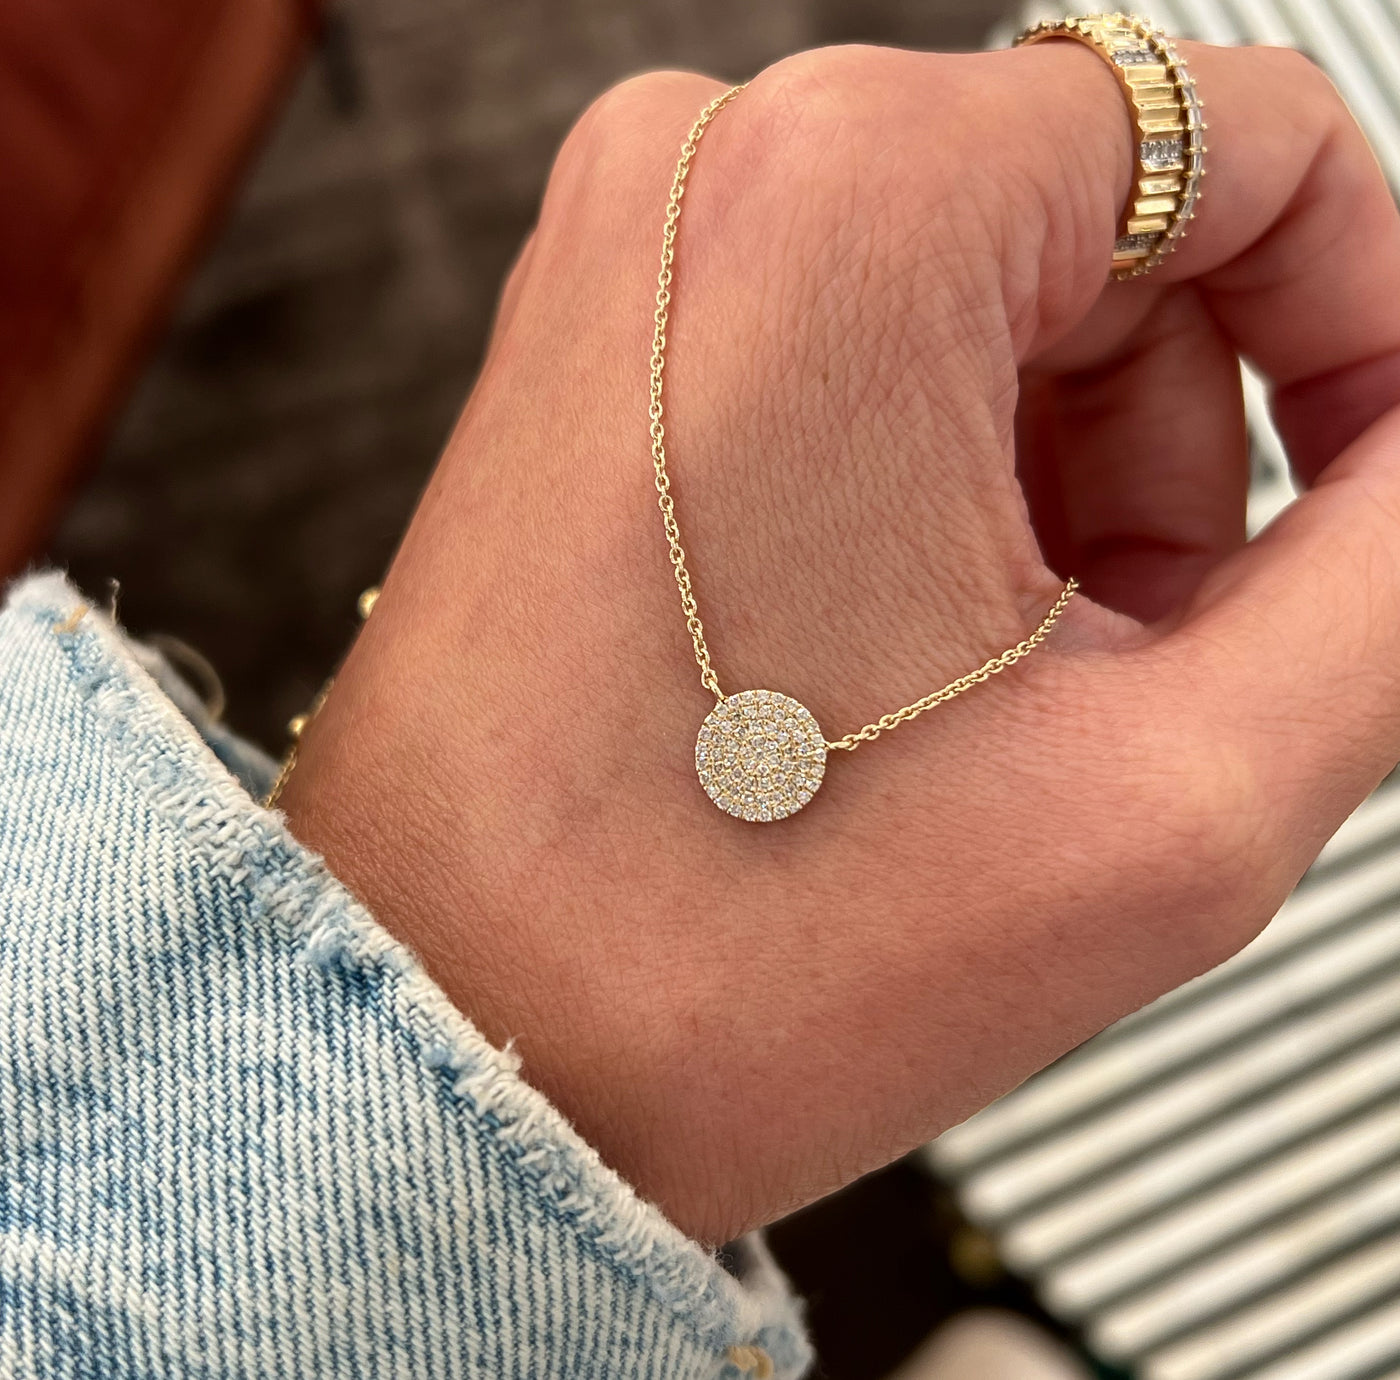 Round Pavé Diamond Necklace